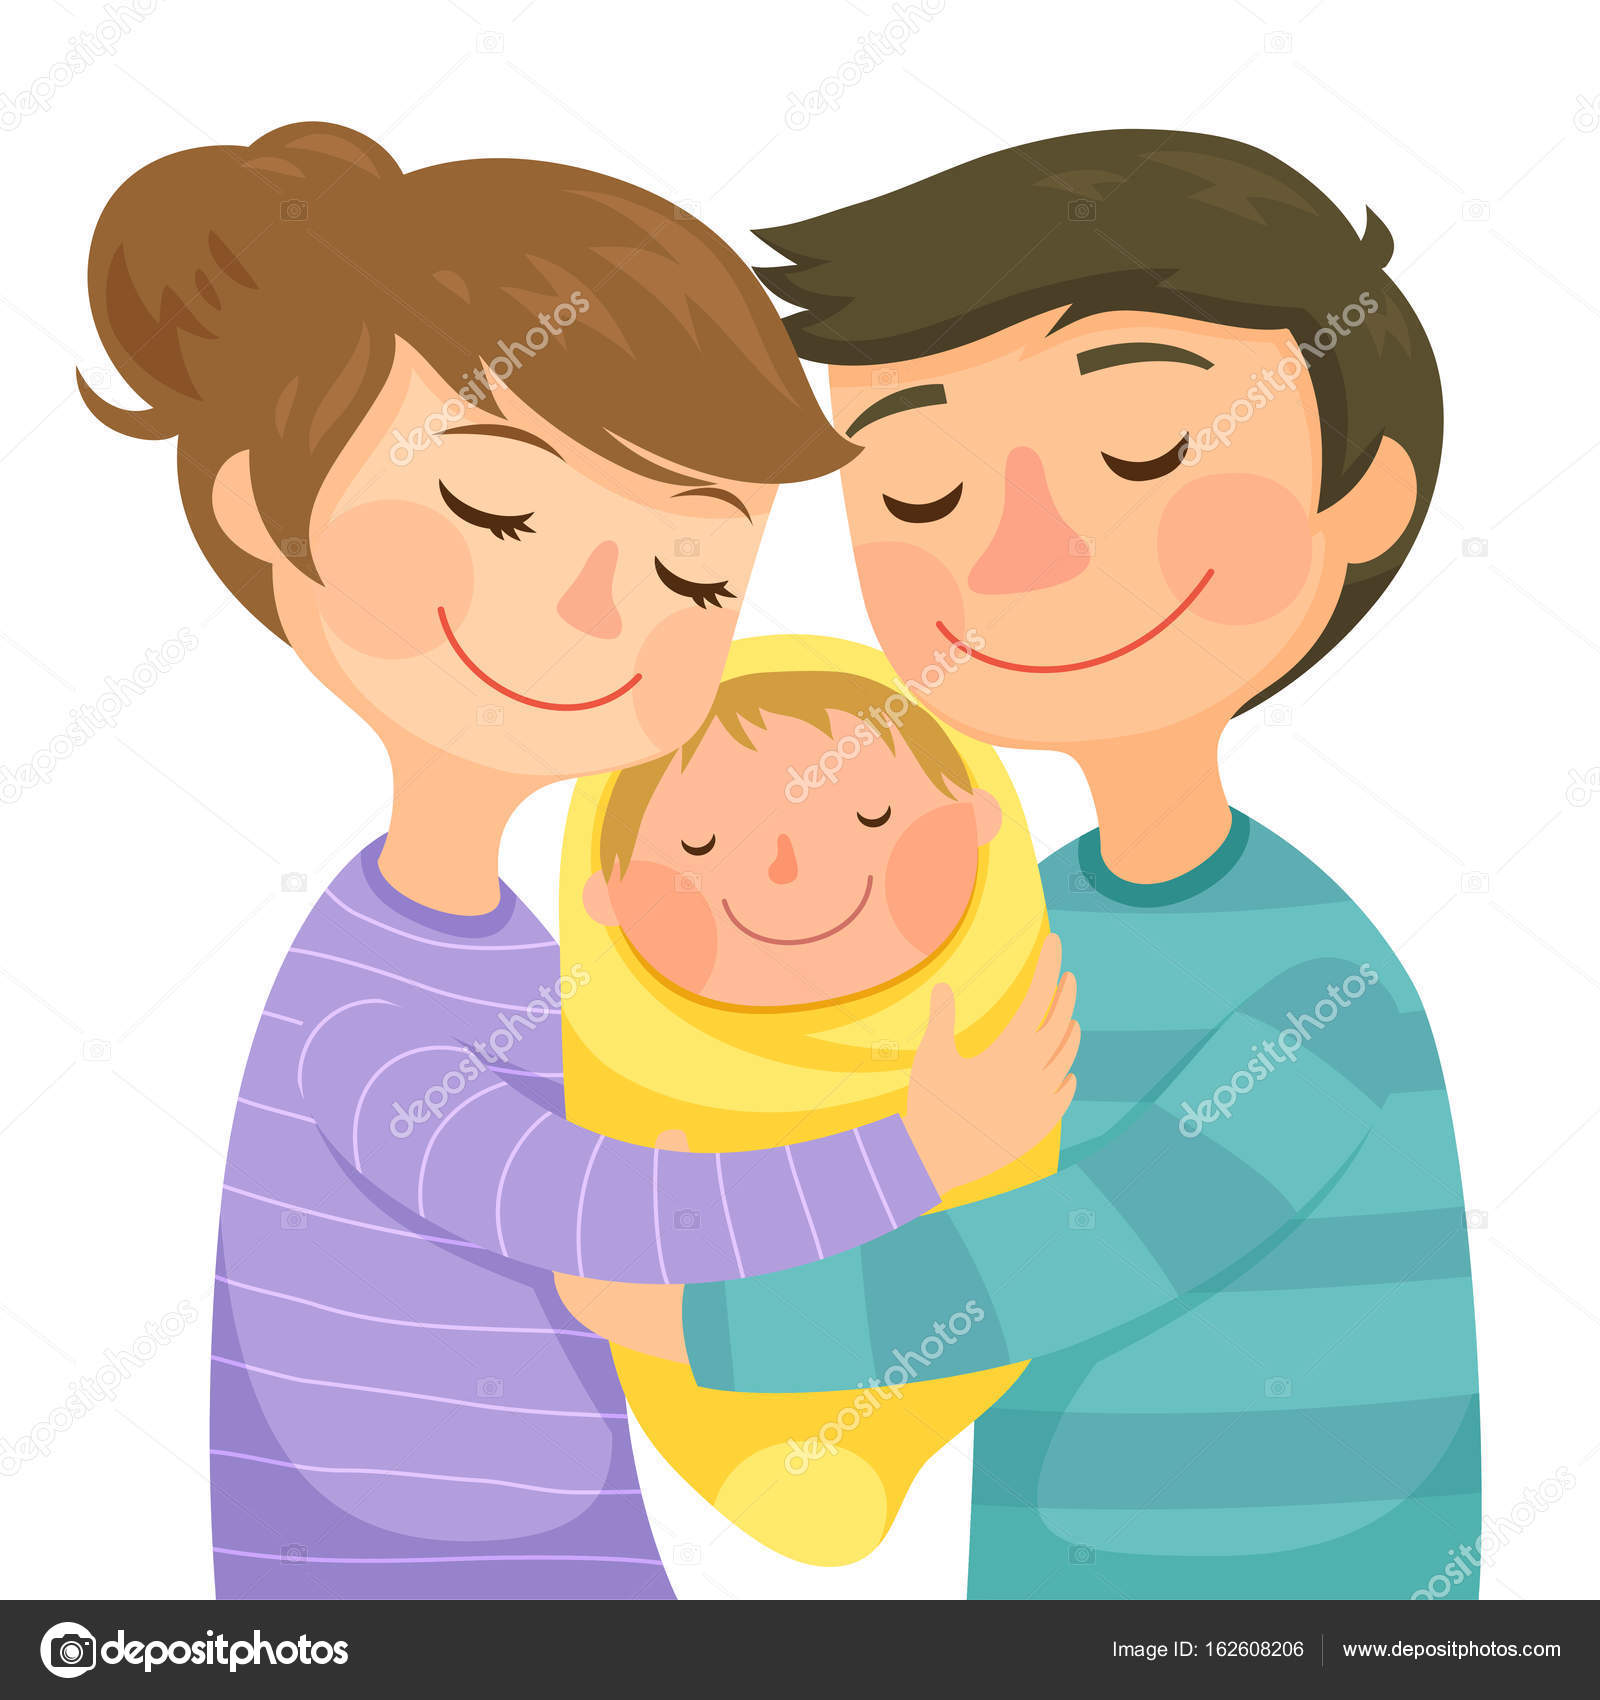 Маму папу обними. Иллюстрация дети и родители обнимают. Молодые семьи с детьми мультяшные. Ребенок с родителями рисунок. Семья обнимается иллюстрация.